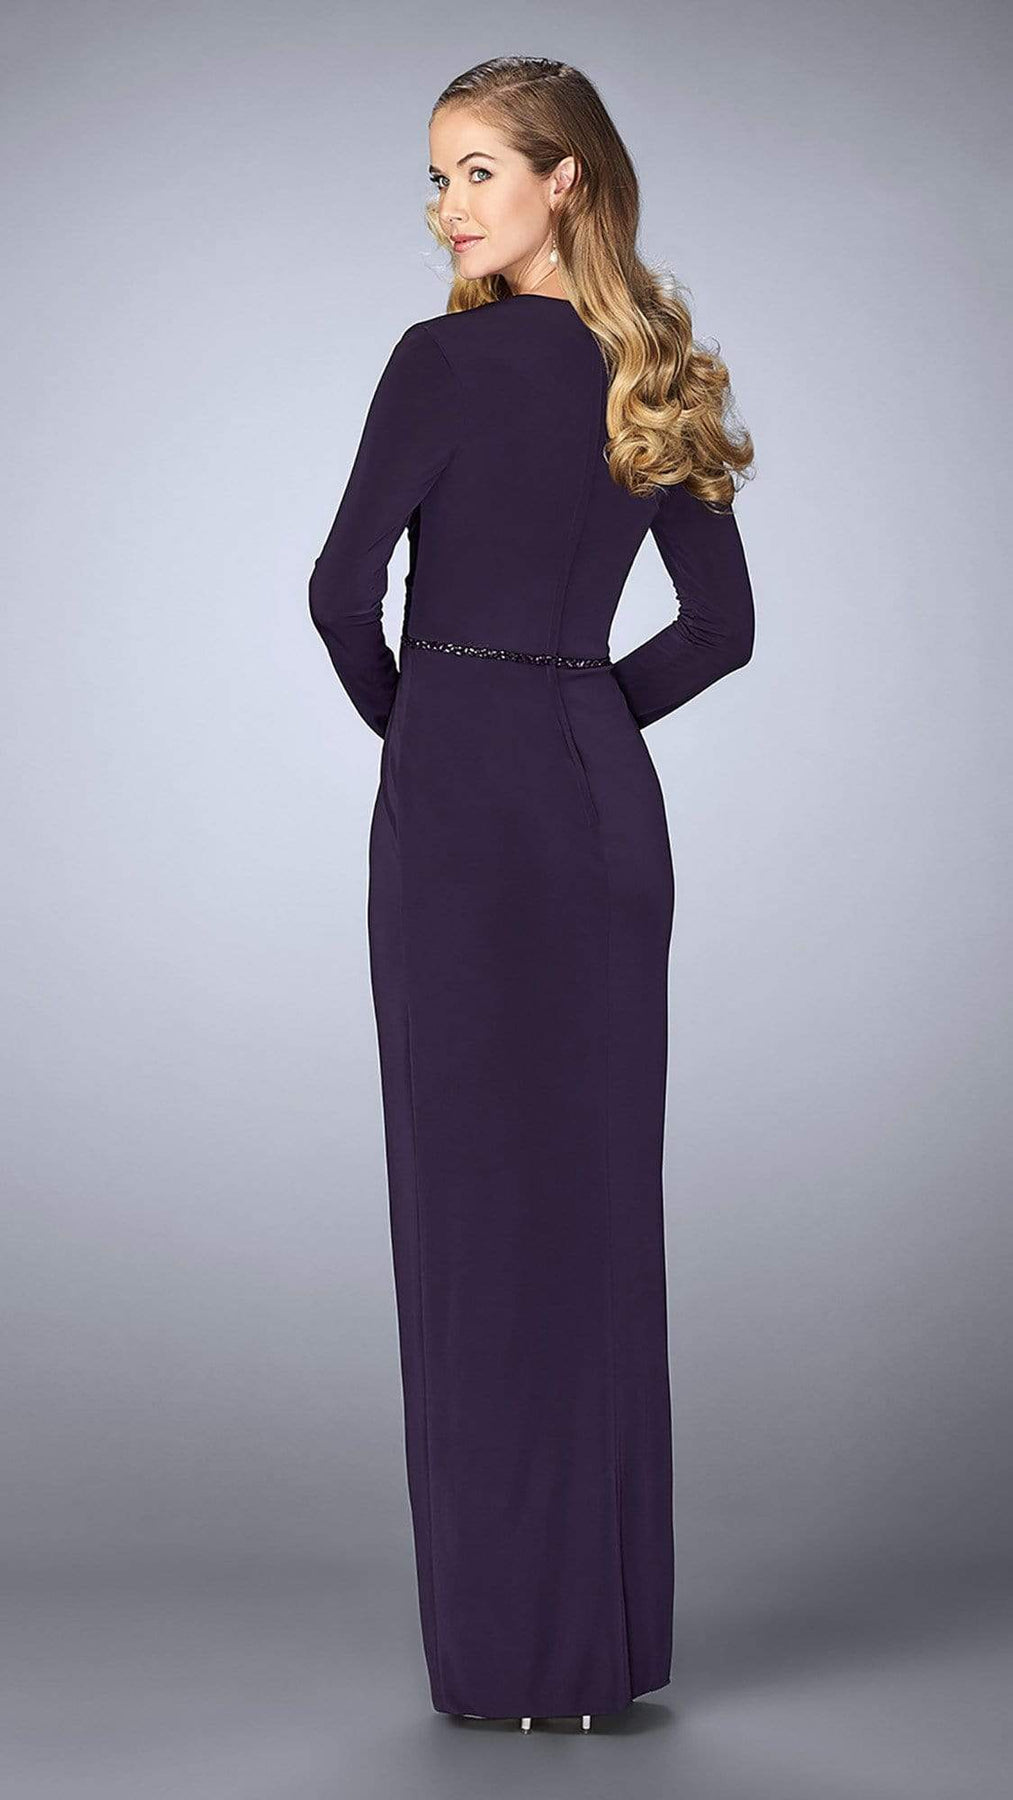 La Femme Long Sleeve Drape Tulip Gown 24927SC - 1 pc Plum in Size 4 Available CCSALE 4 / Plum